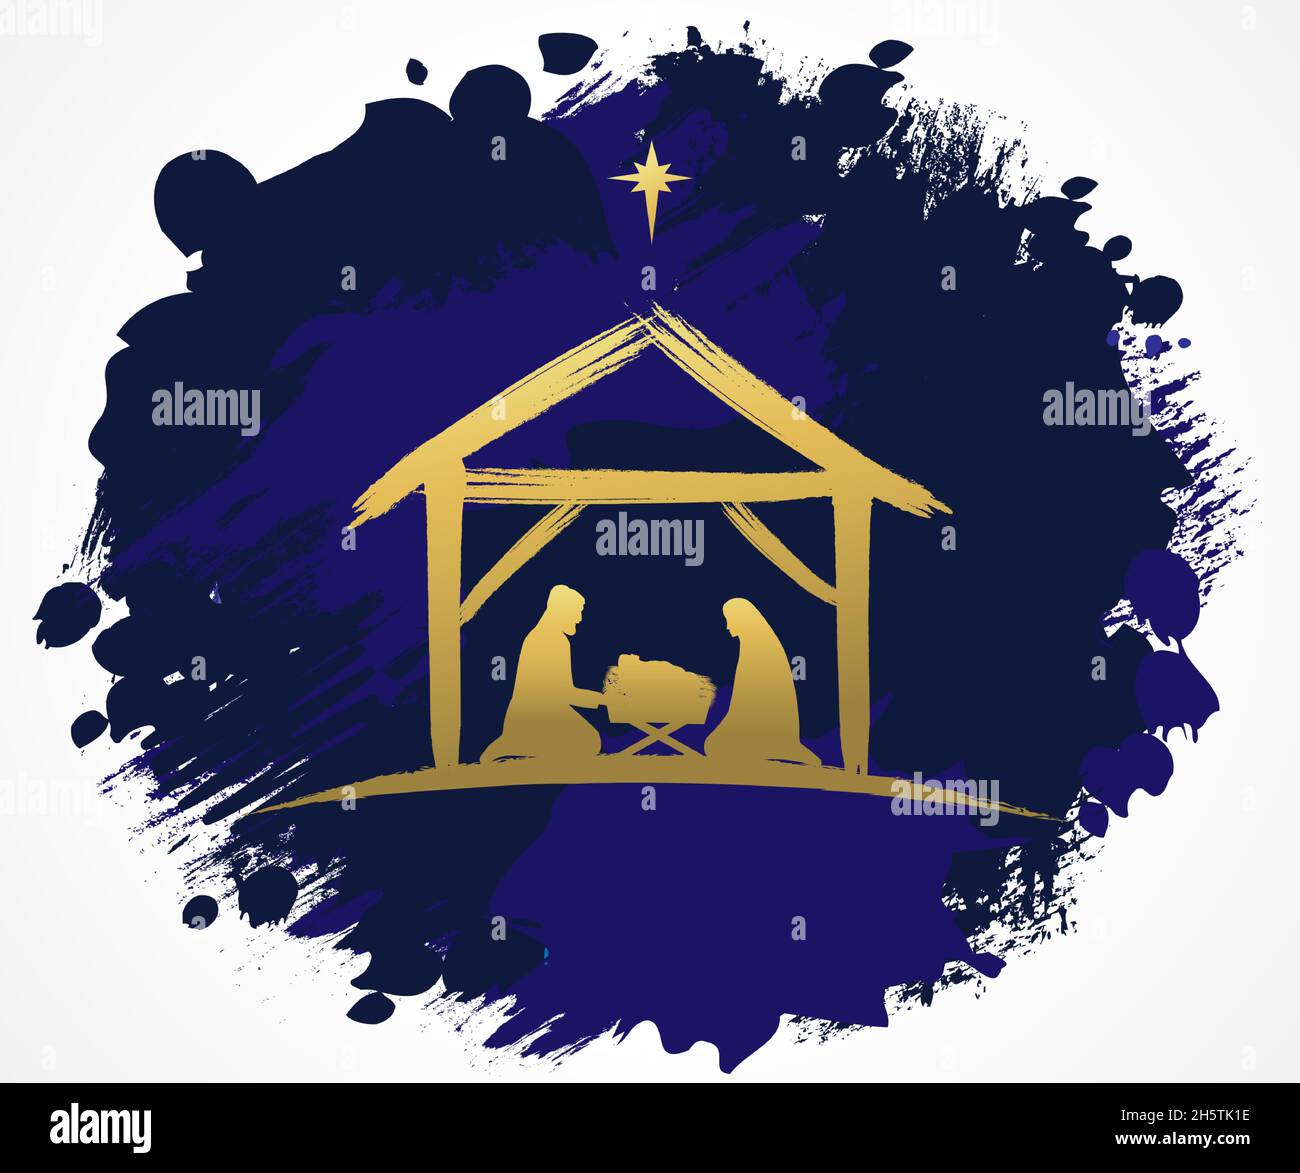 Weihnachtsszene des Jesuskindes in der Krippe mit goldener Silhouette Maria und Josef und Bethlehem-Stern. Christliche Geburt Grußkarte, Geburt Christus Stock Vektor